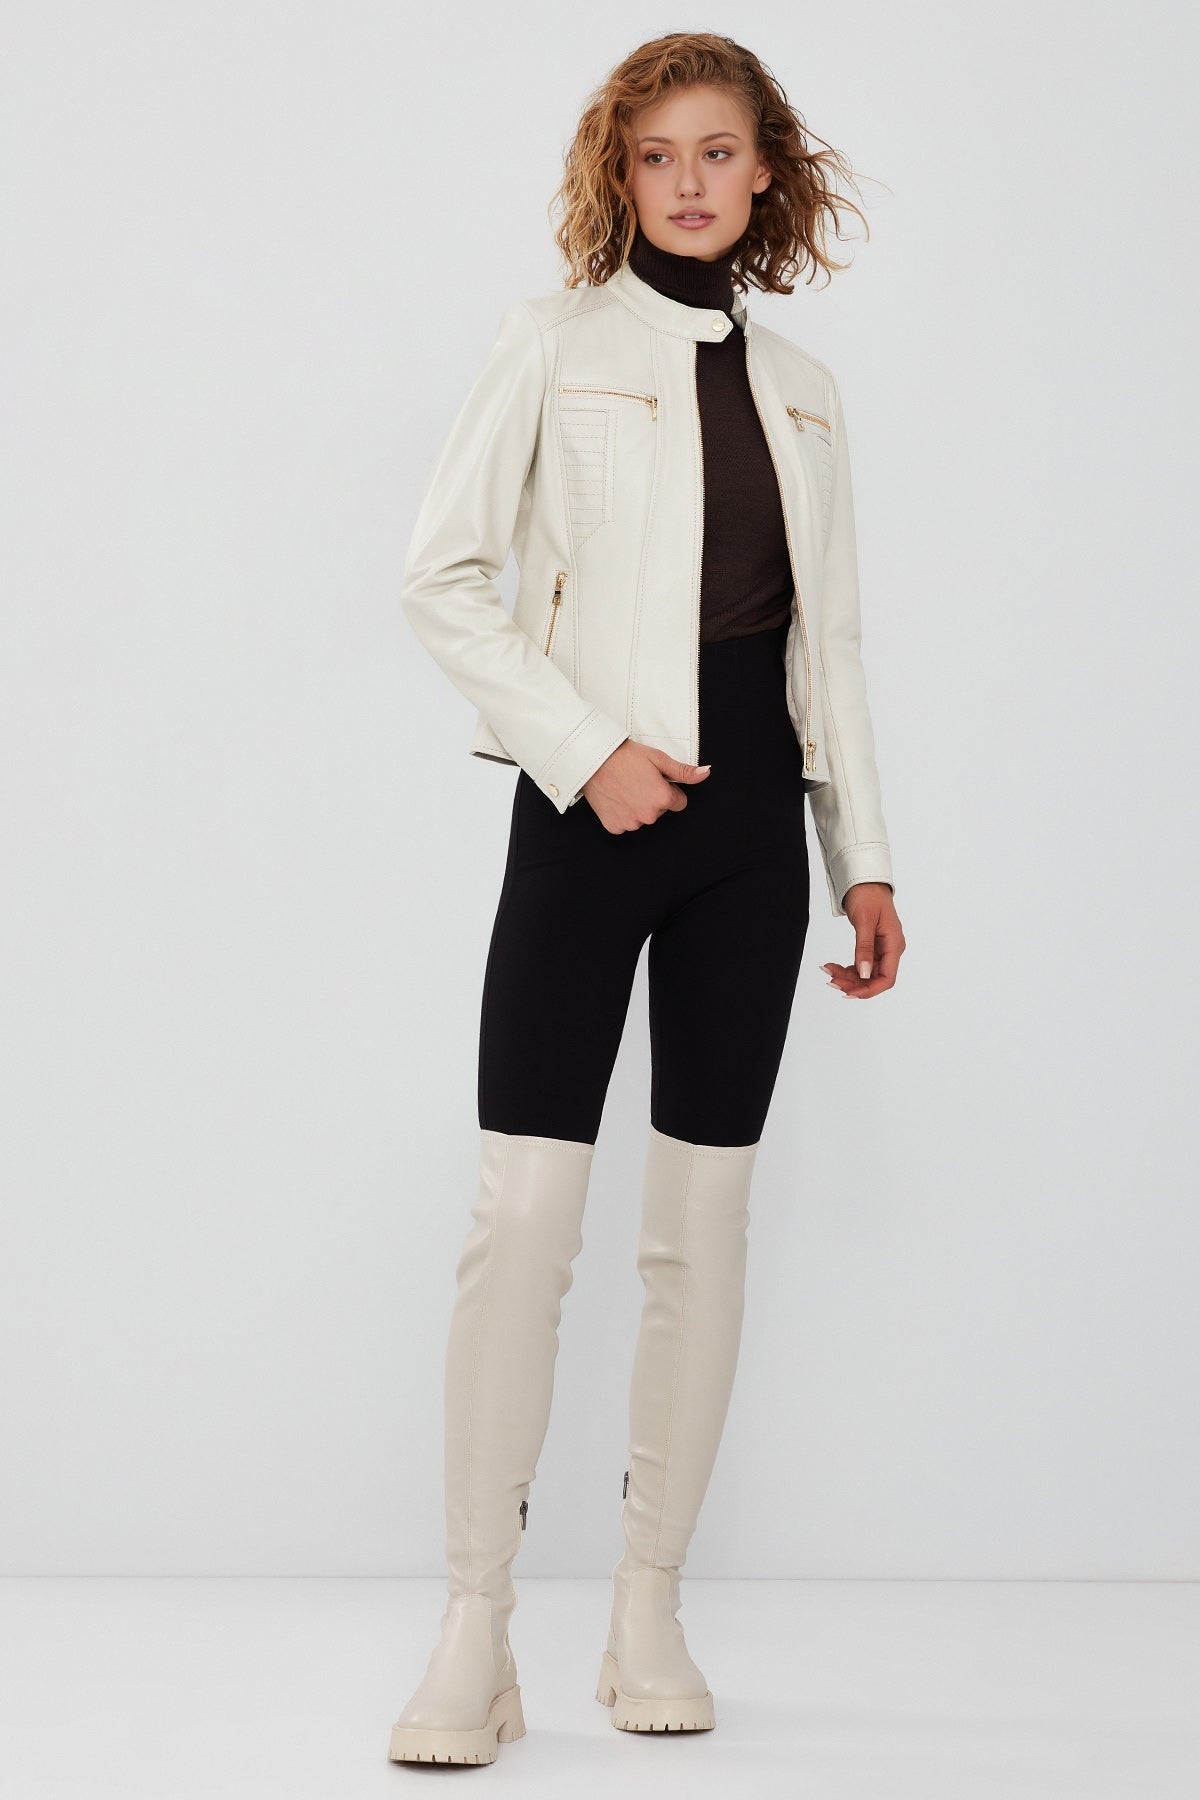 Marlyn Women's Beige Short Leather Jacket